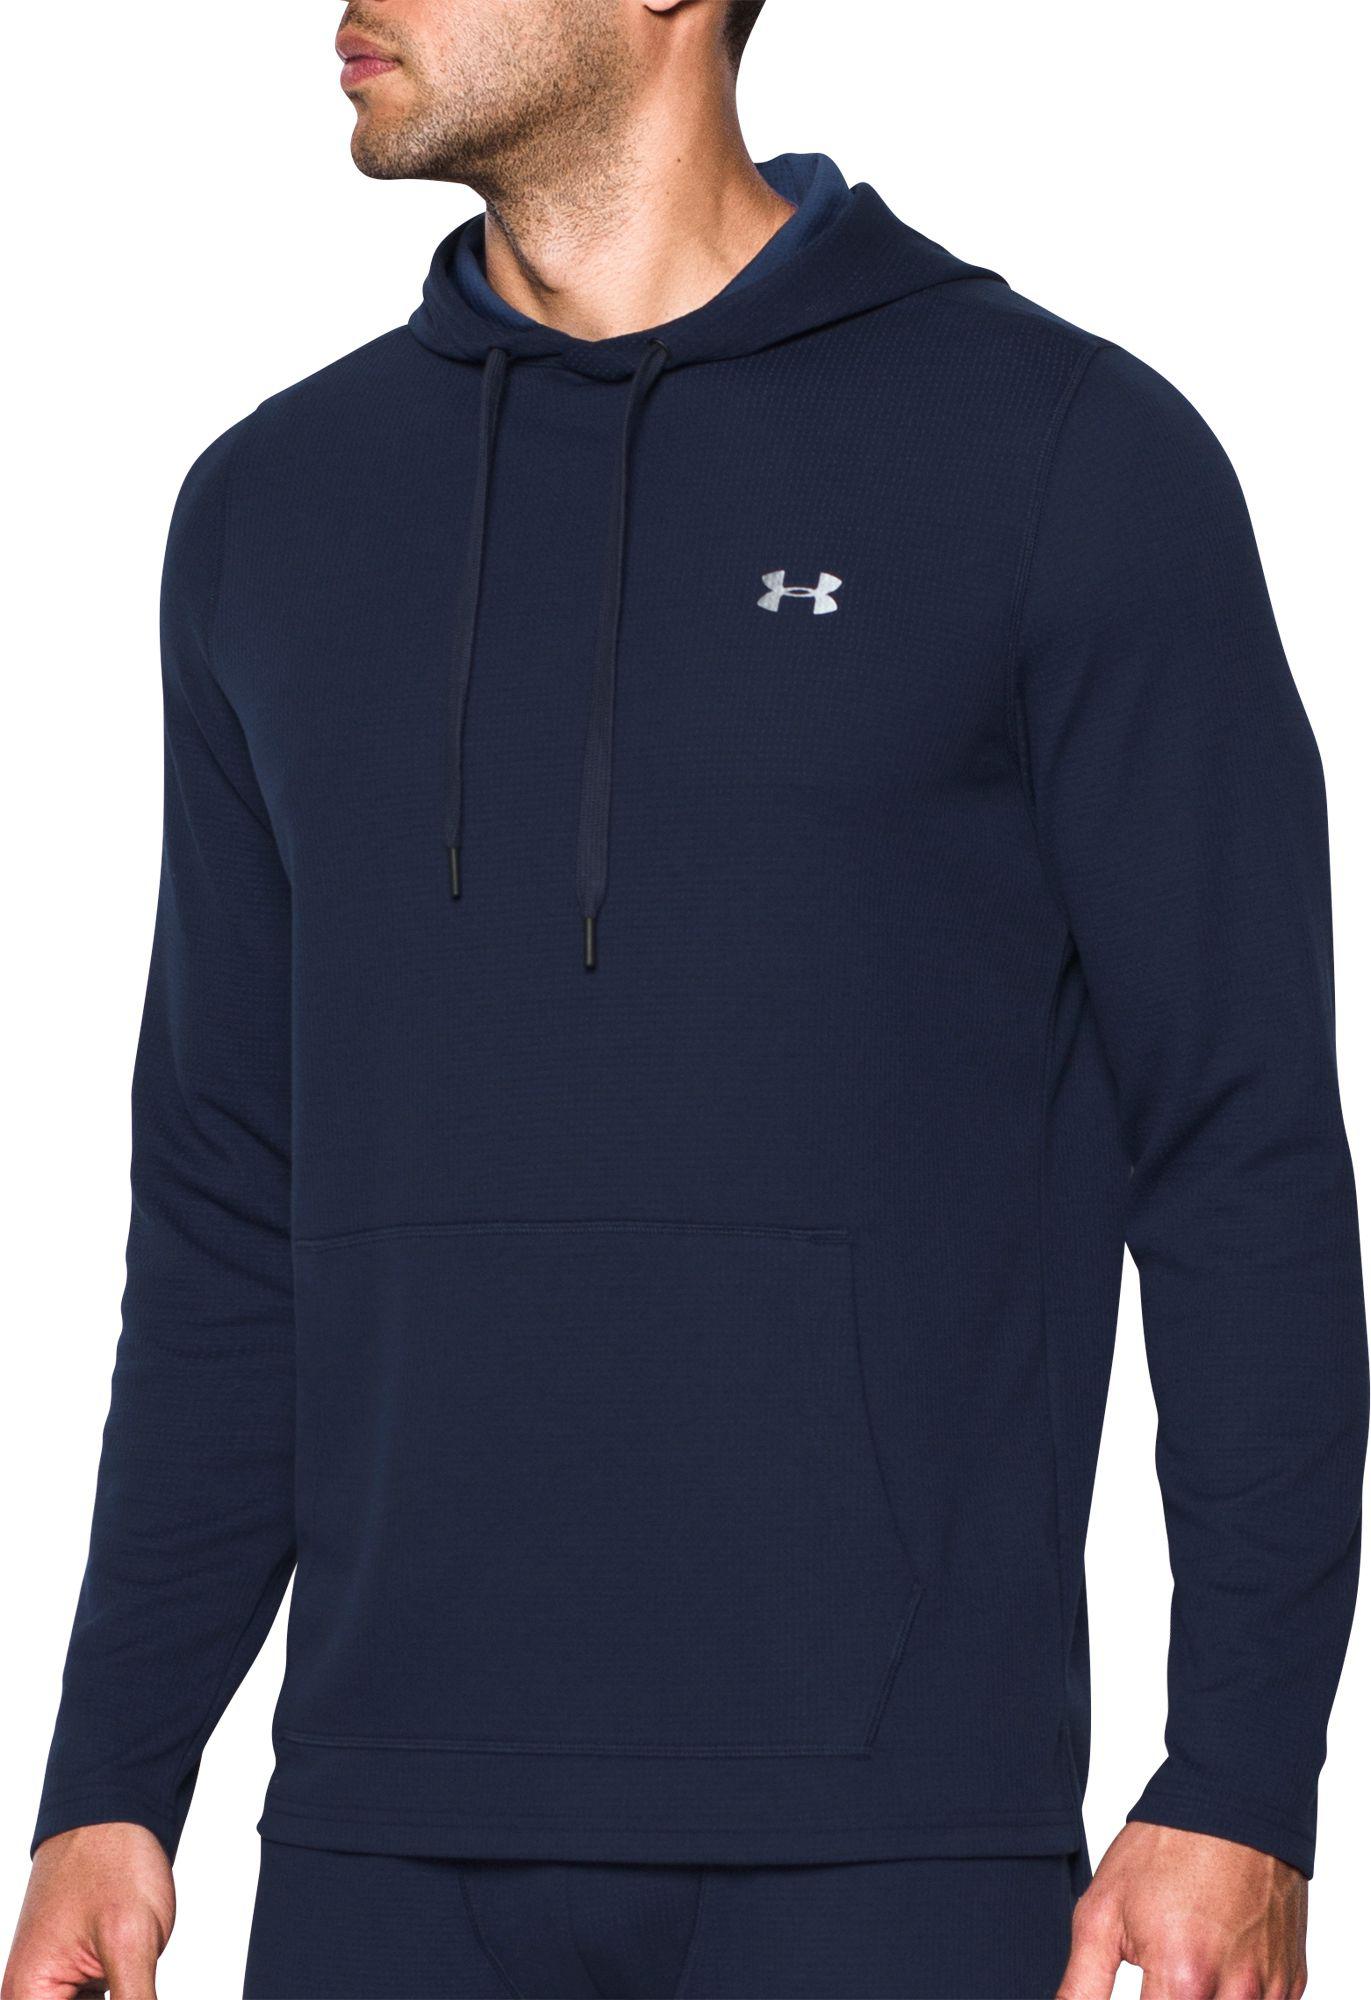 navy blue under armour sweatshirt